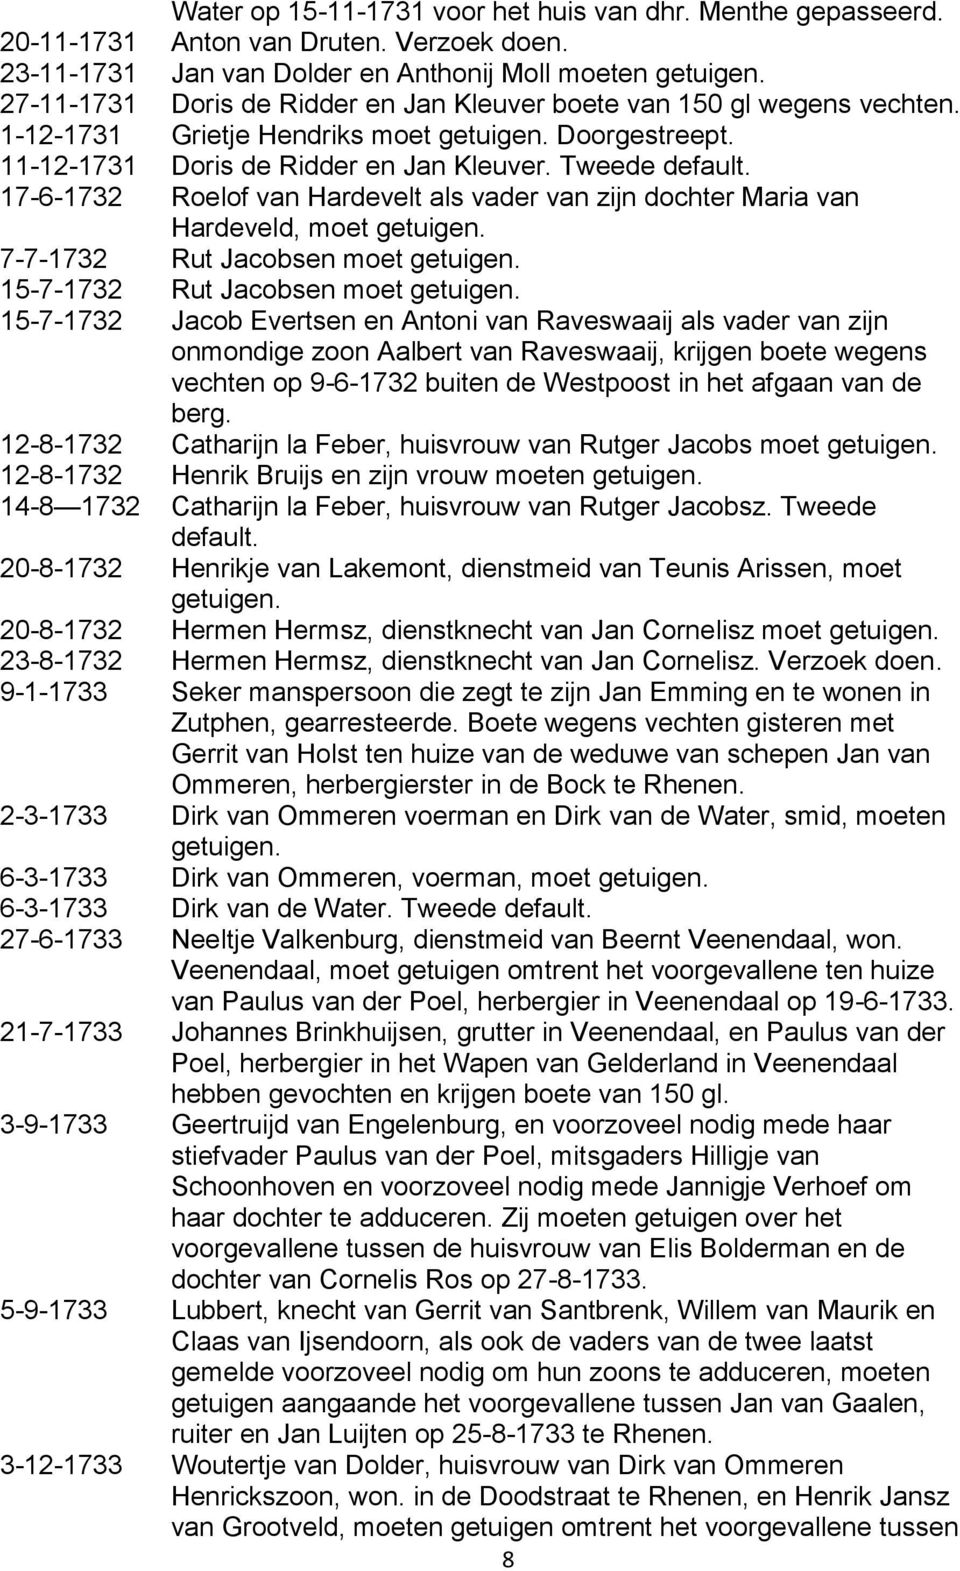 17-6-1732 Roelof van Hardevelt als vader van zijn dochter Maria van Hardeveld, moet getuigen. 7-7-1732 Rut Jacobsen moet getuigen. 15-7-1732 Rut Jacobsen moet getuigen.